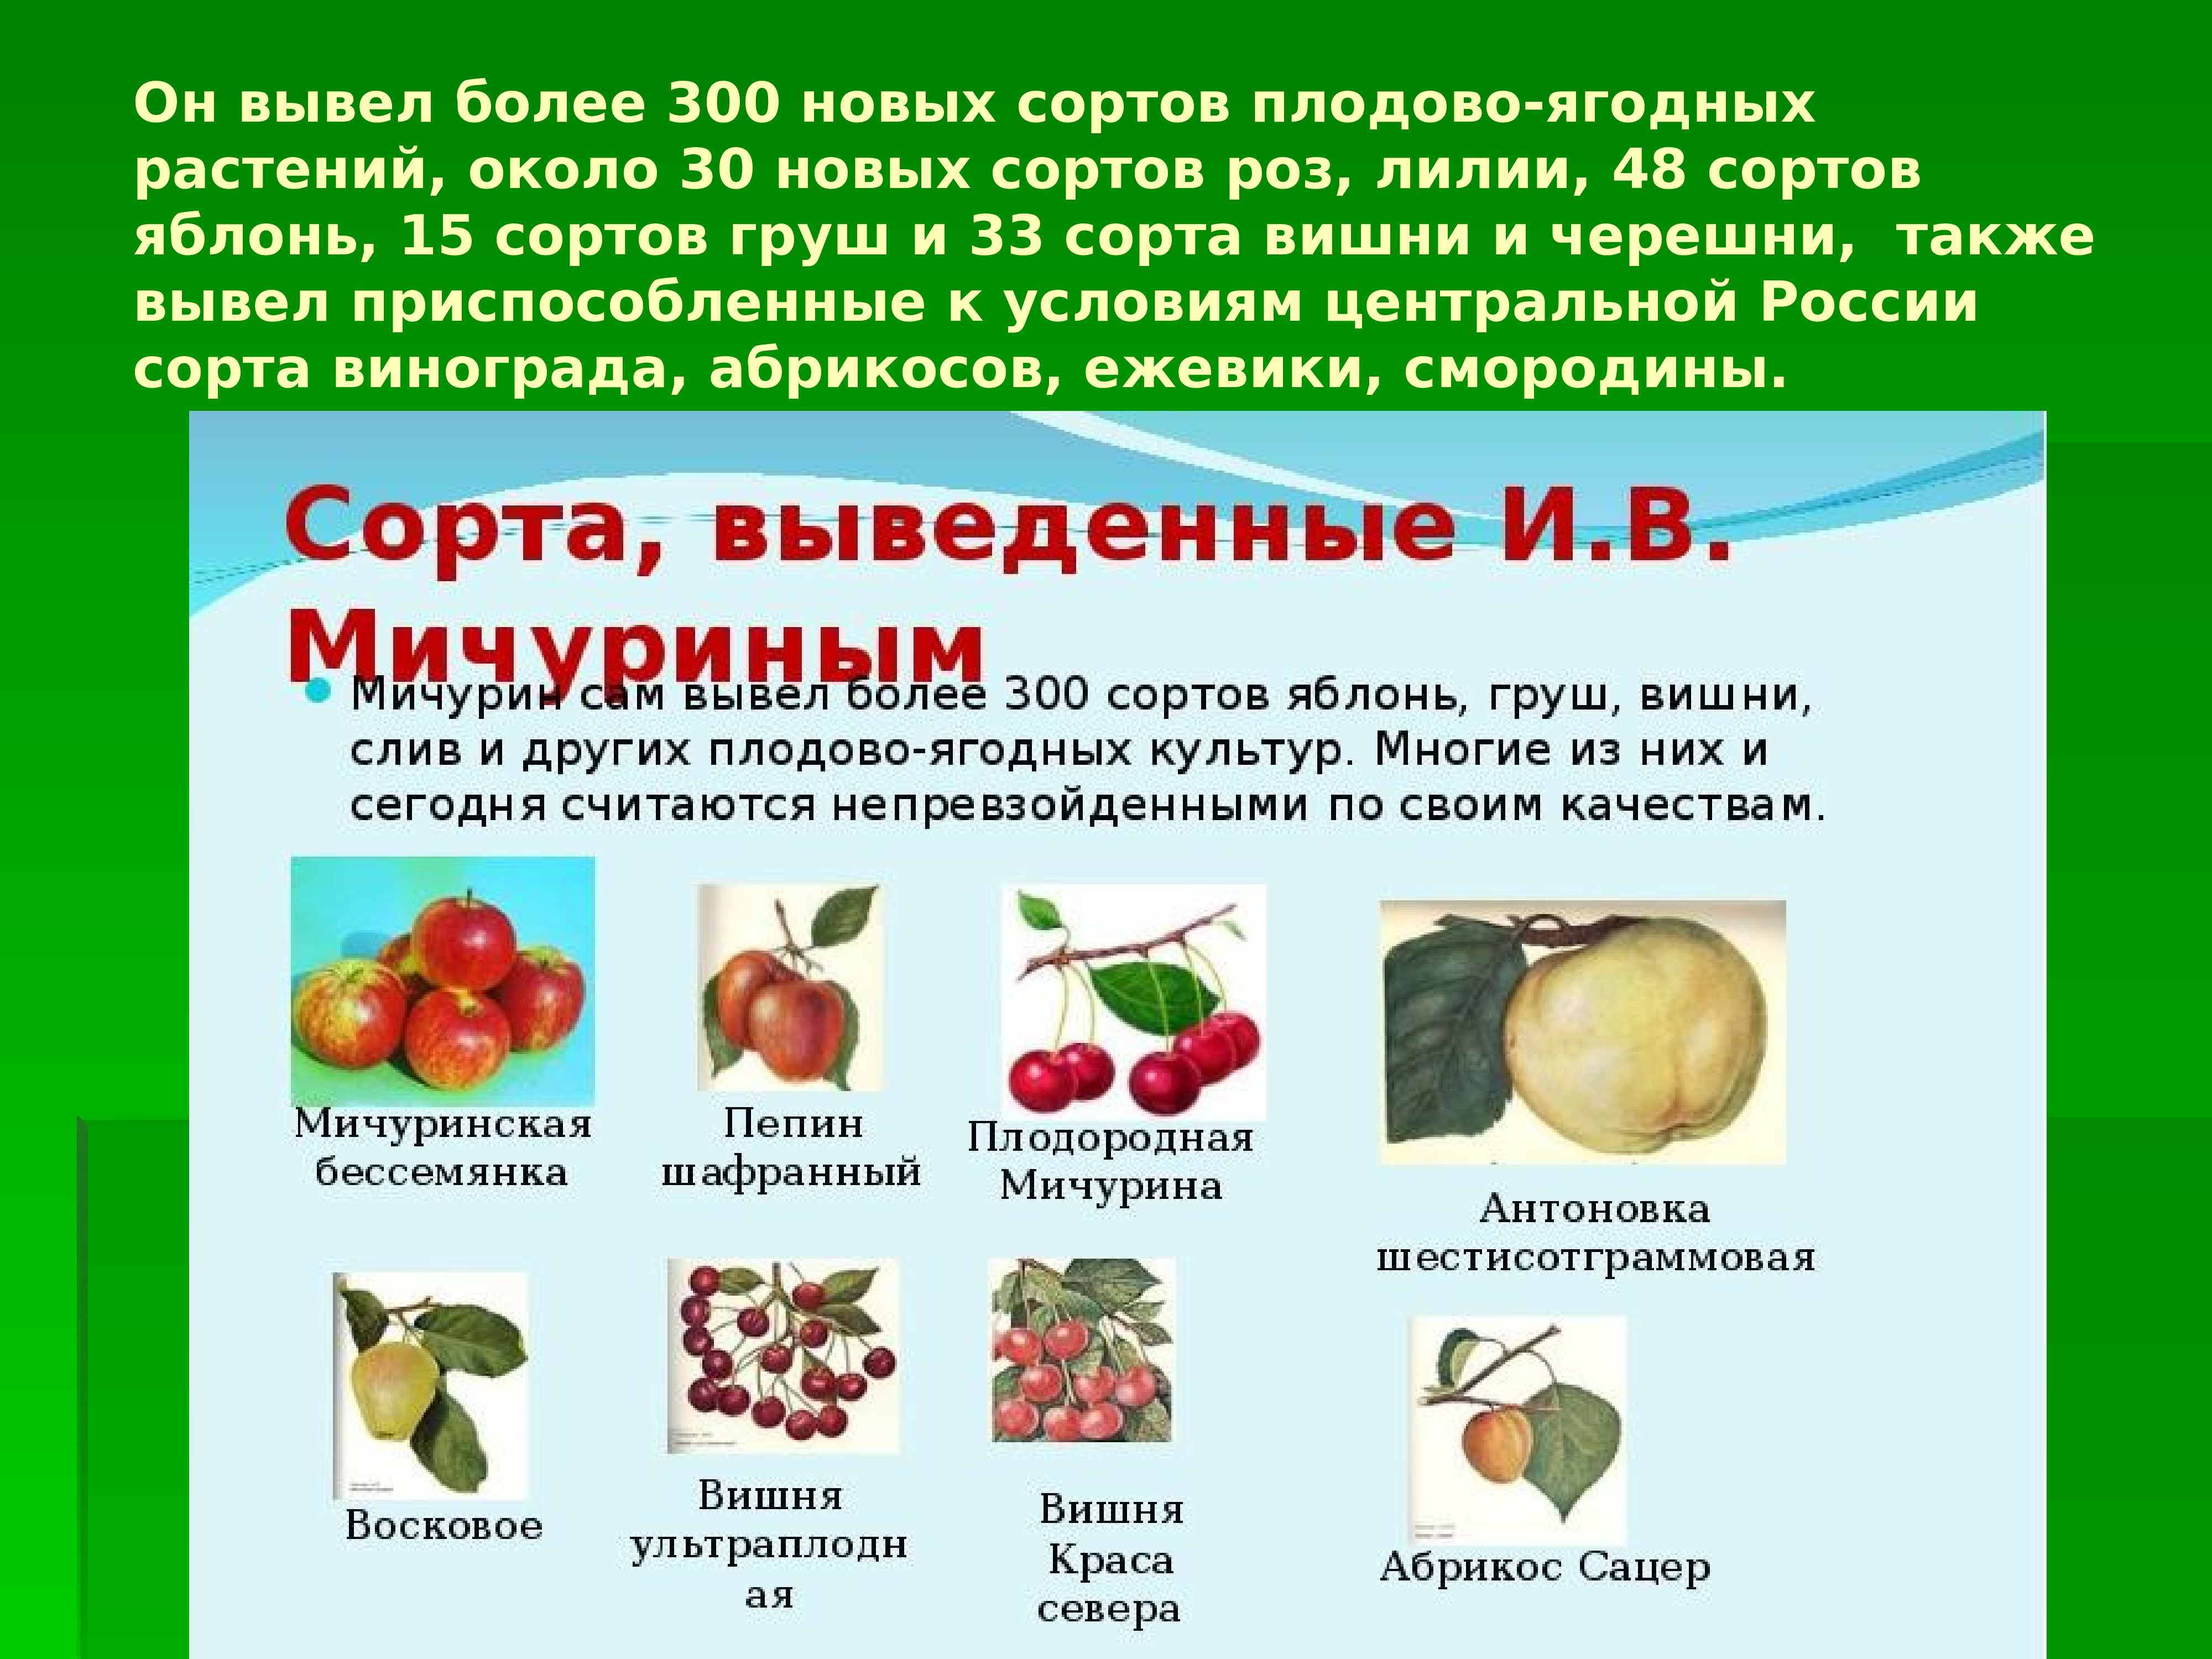 Селекции плодовых культур. Вклад Мичурина в селекцию плодово ягодных культур.